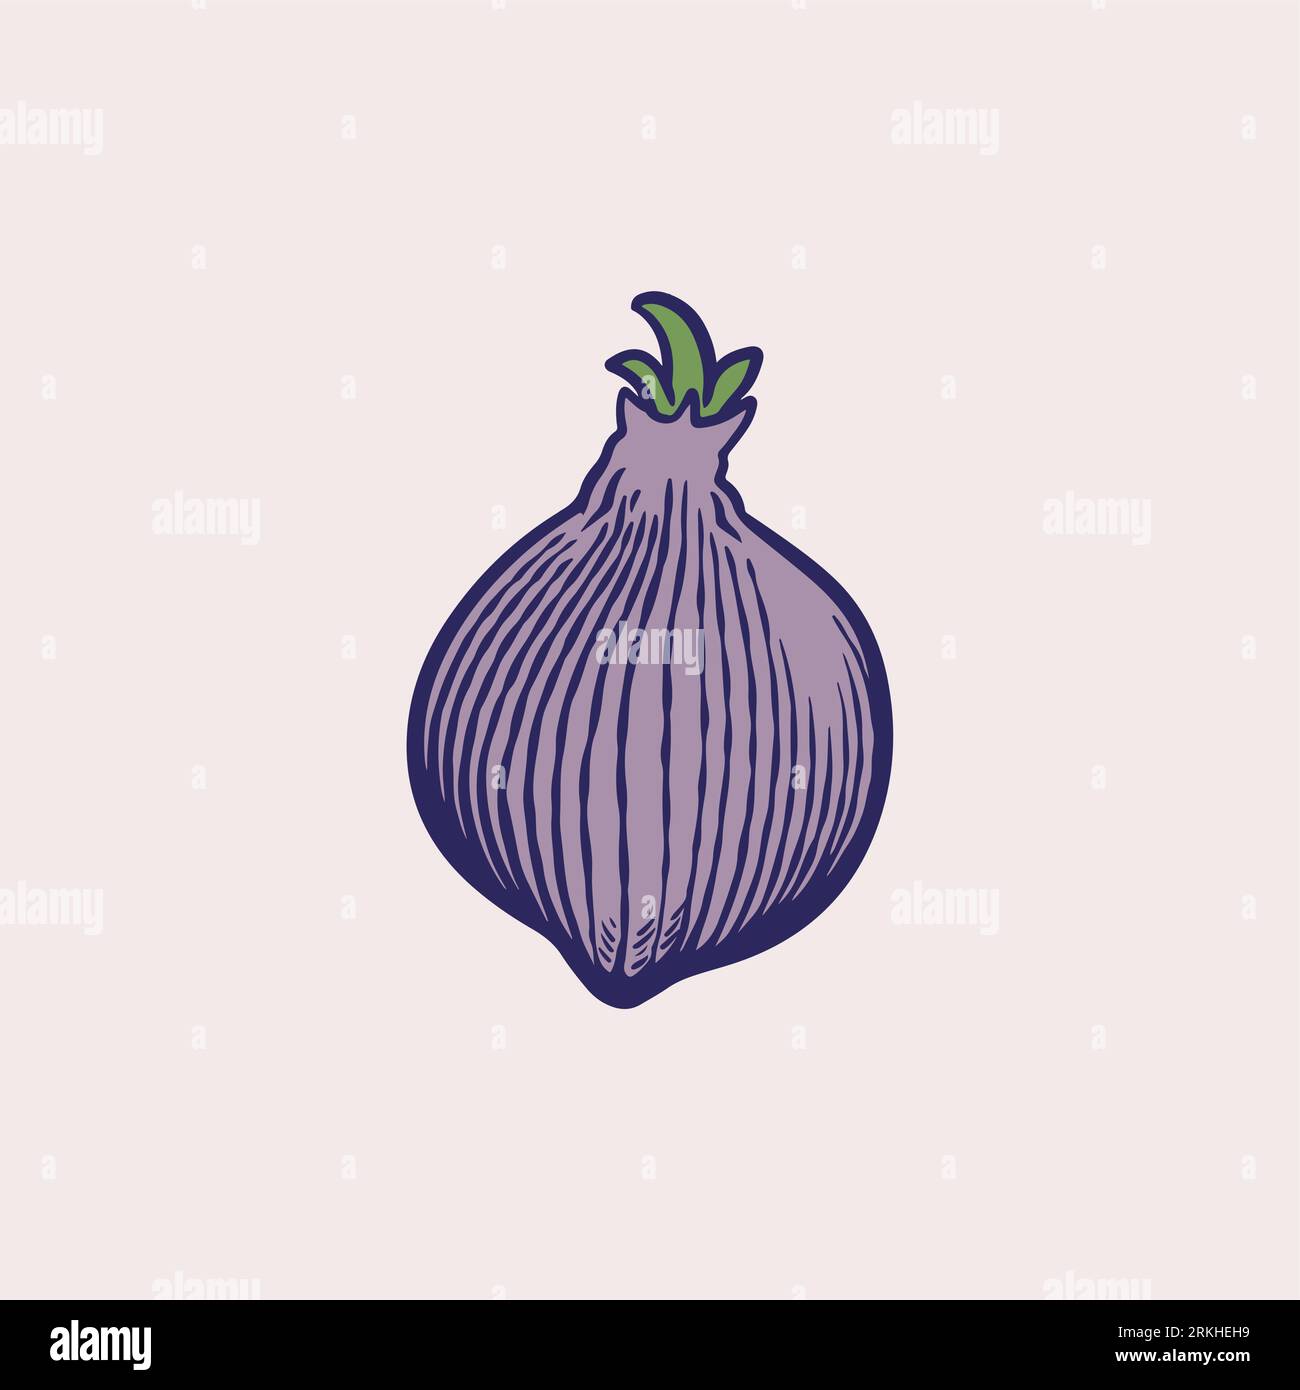 Französische Schalottenzwiebel oder Allium cepa, aggregatum. Freihändige Umrissfarbe Hand gezeichnetes Objektsymbol skizzenhaft. Bio-gesunde Lebensmittel. Grünes Gemüse. Handzeichnung Stock Vektor